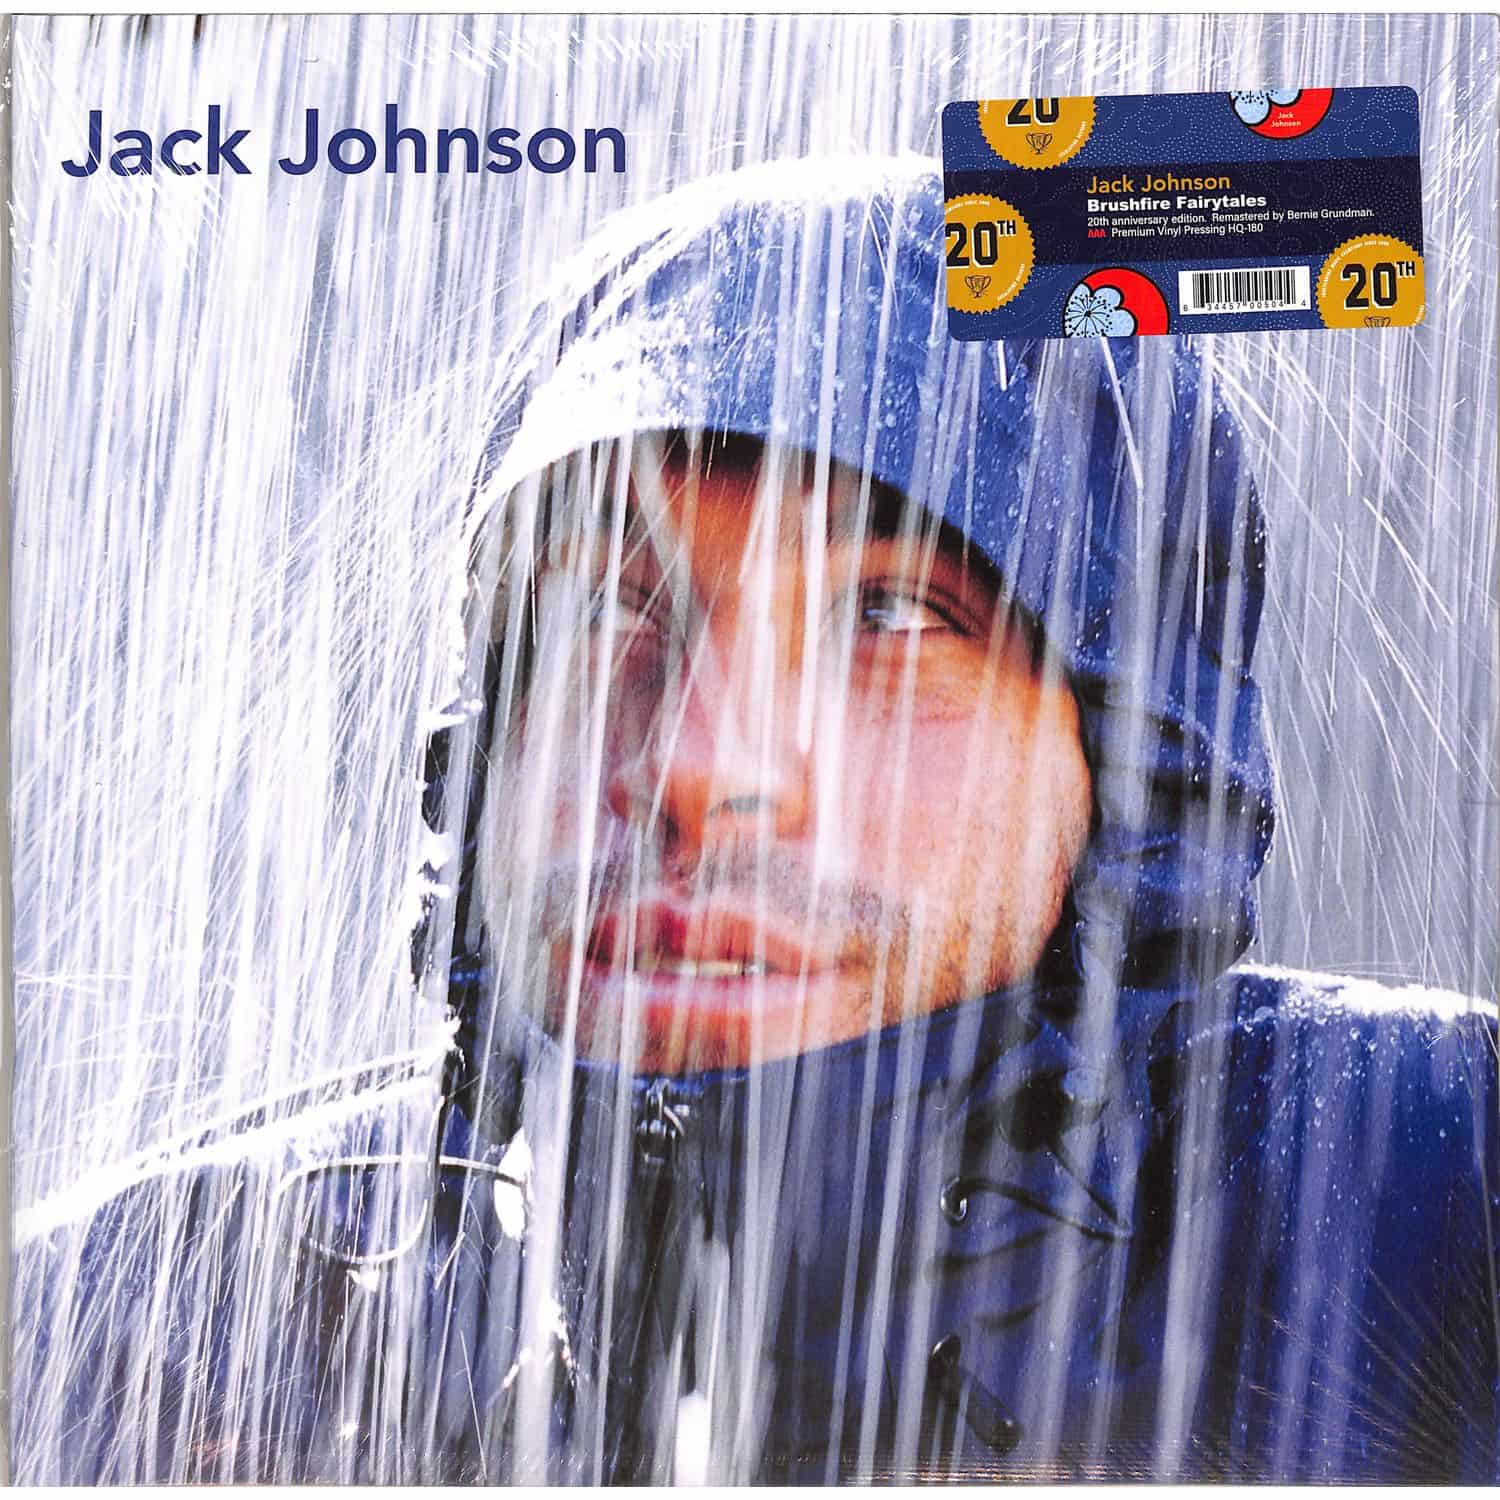  Jack Johnson - BRUSHFIRE FAIRYTALES 